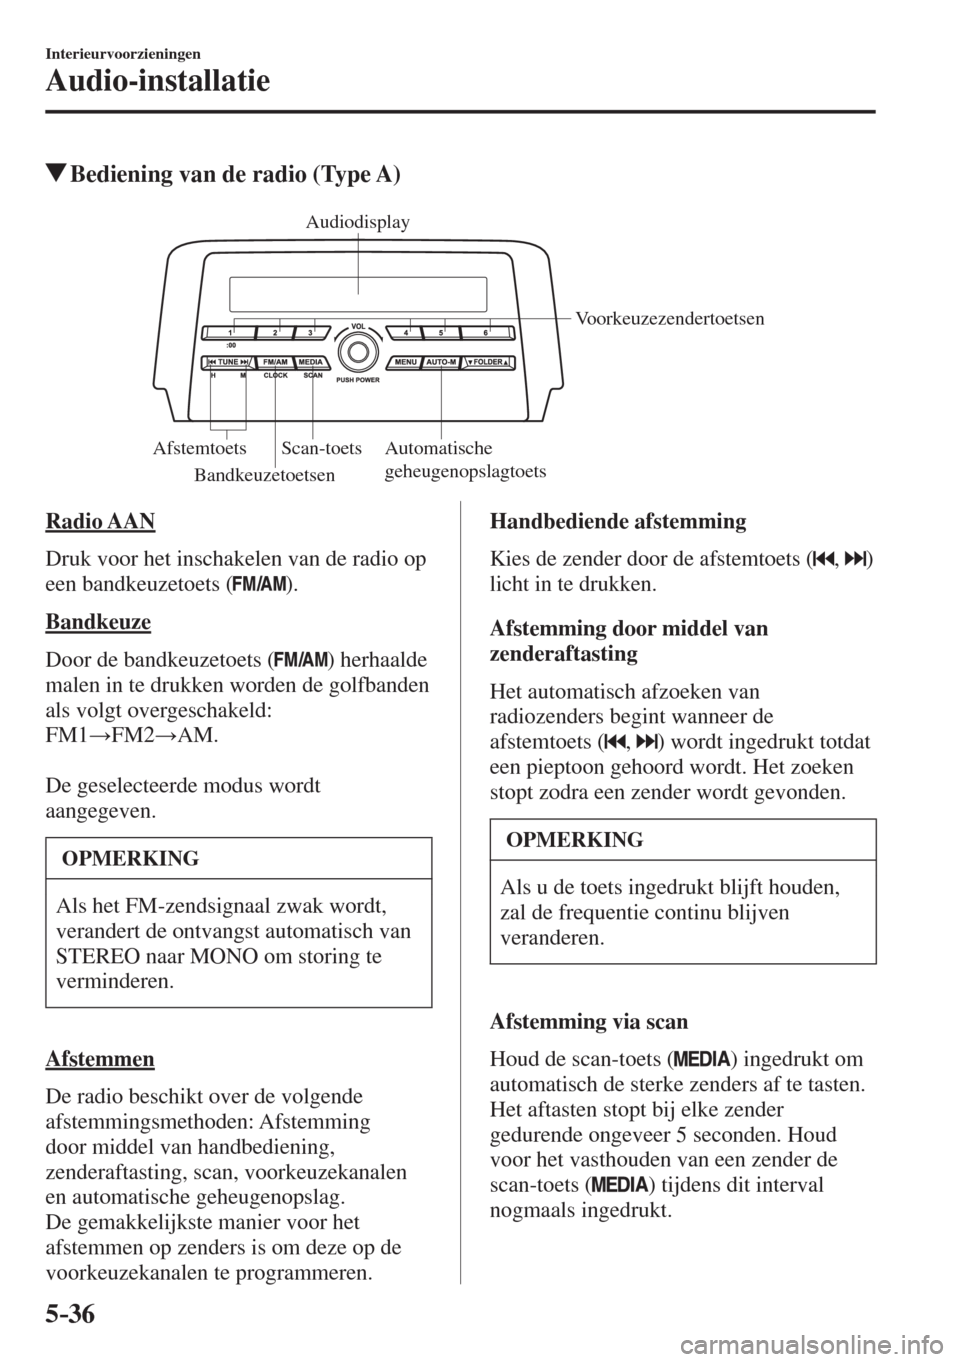 MAZDA MODEL 6 2017  Handleiding (in Dutch) 5–36
Interieurvoorzieningen
Audio-installatie
          Bediening van de radio (Type A)
   
Audiodisplay
Voorkeuzezendertoetsen
Automatische 
geheugenopslagtoets Scan-toets Afstemtoets
Bandkeuzetoet